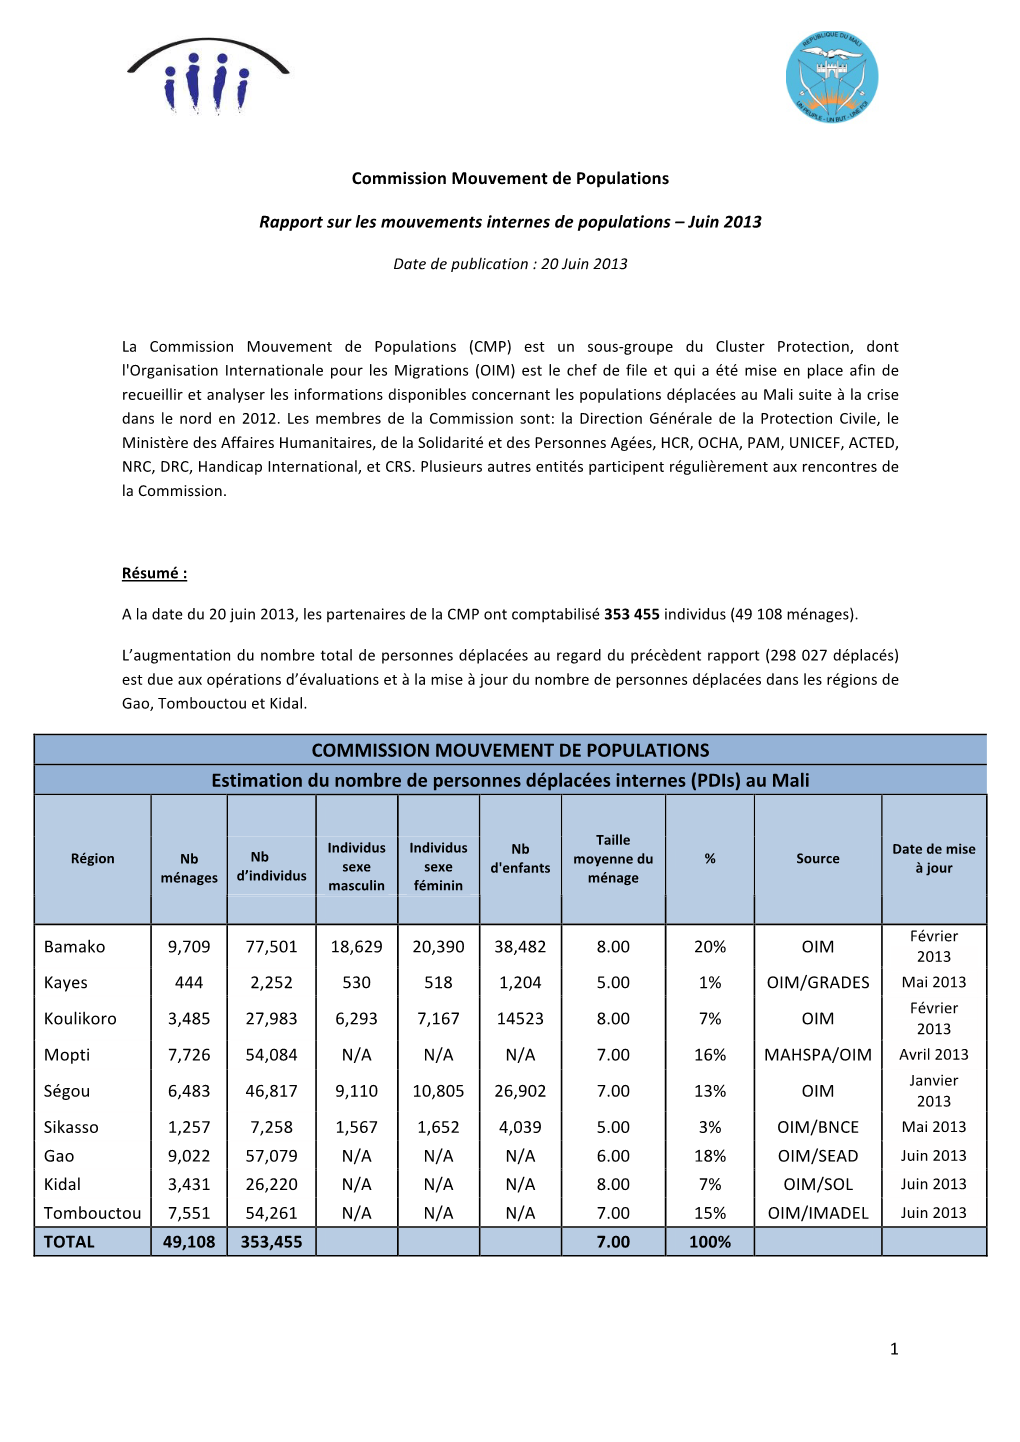 COMMISSION MOUVEMENT DE POPULATIONS Estimation Du Nombre De Personnes Déplacées Internes (Pdis) Au Mali